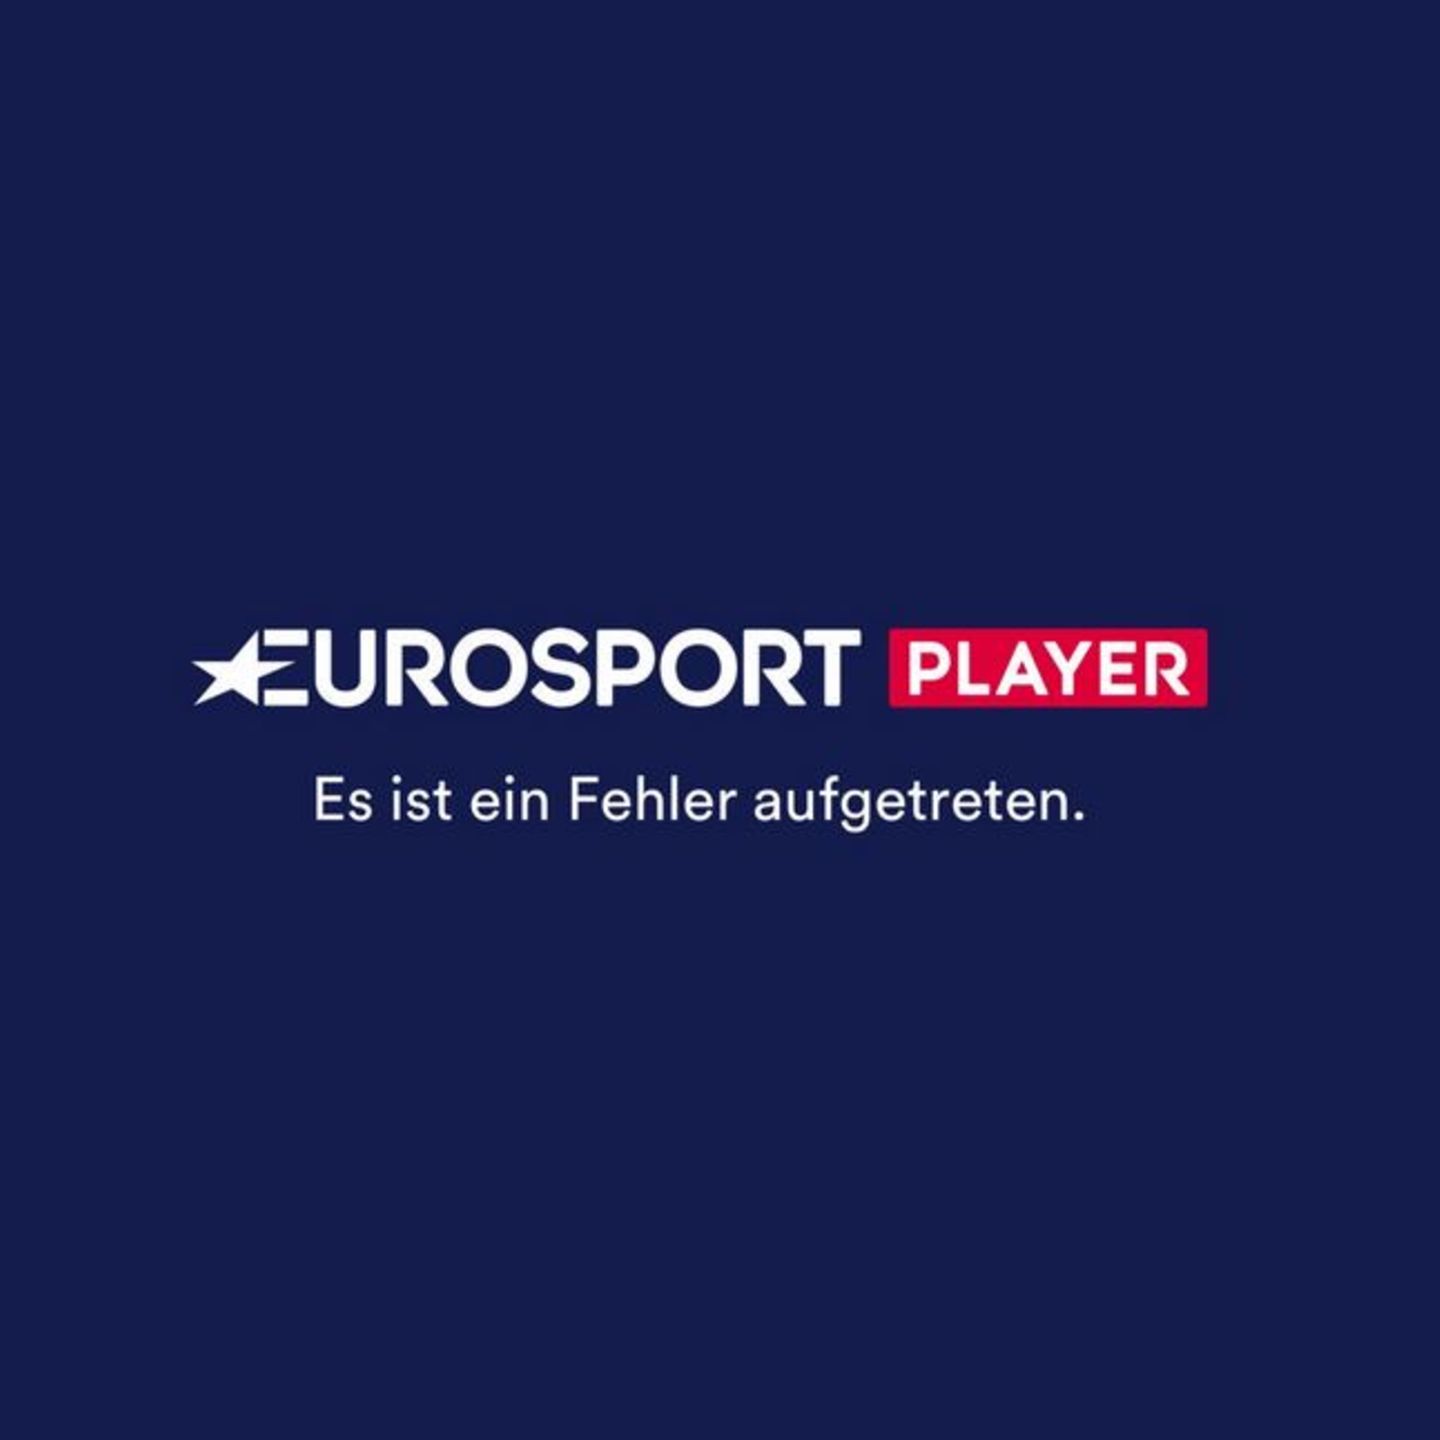 Eurosport Player Panne Kunden bekommen 10 Euro zurück STERN.de